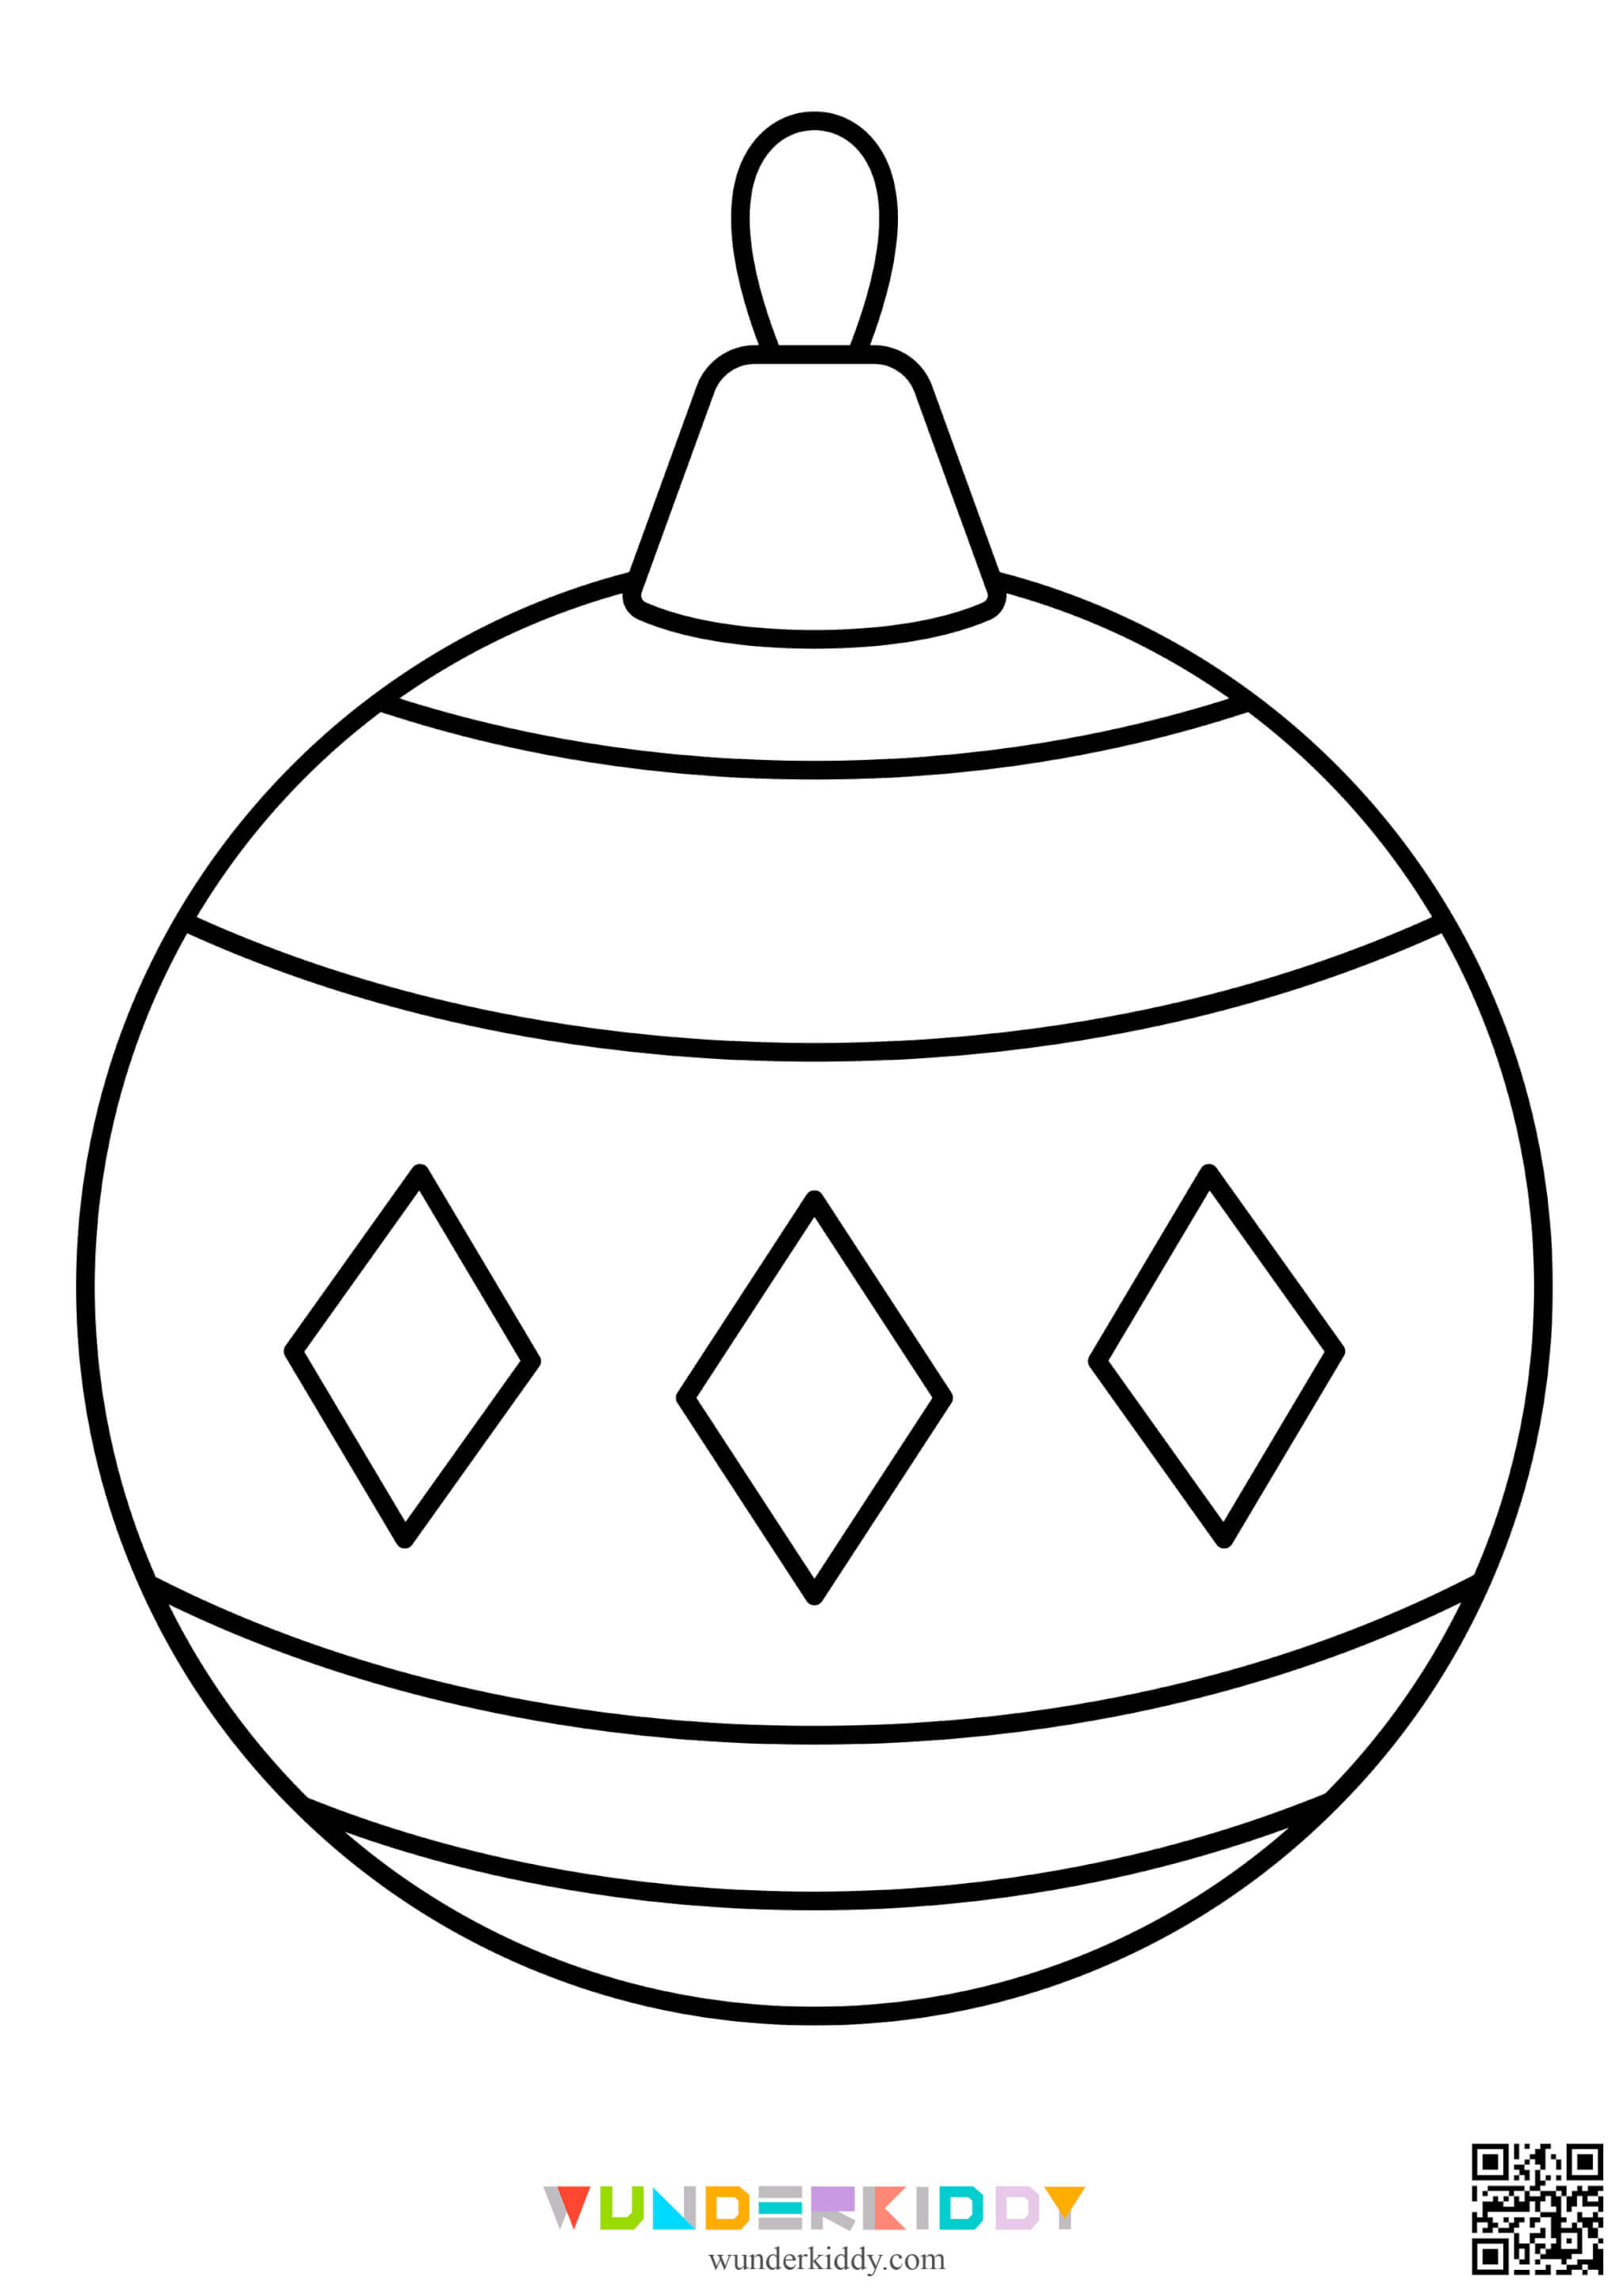 Розмальовки ялинкових кульок - Зображення 2